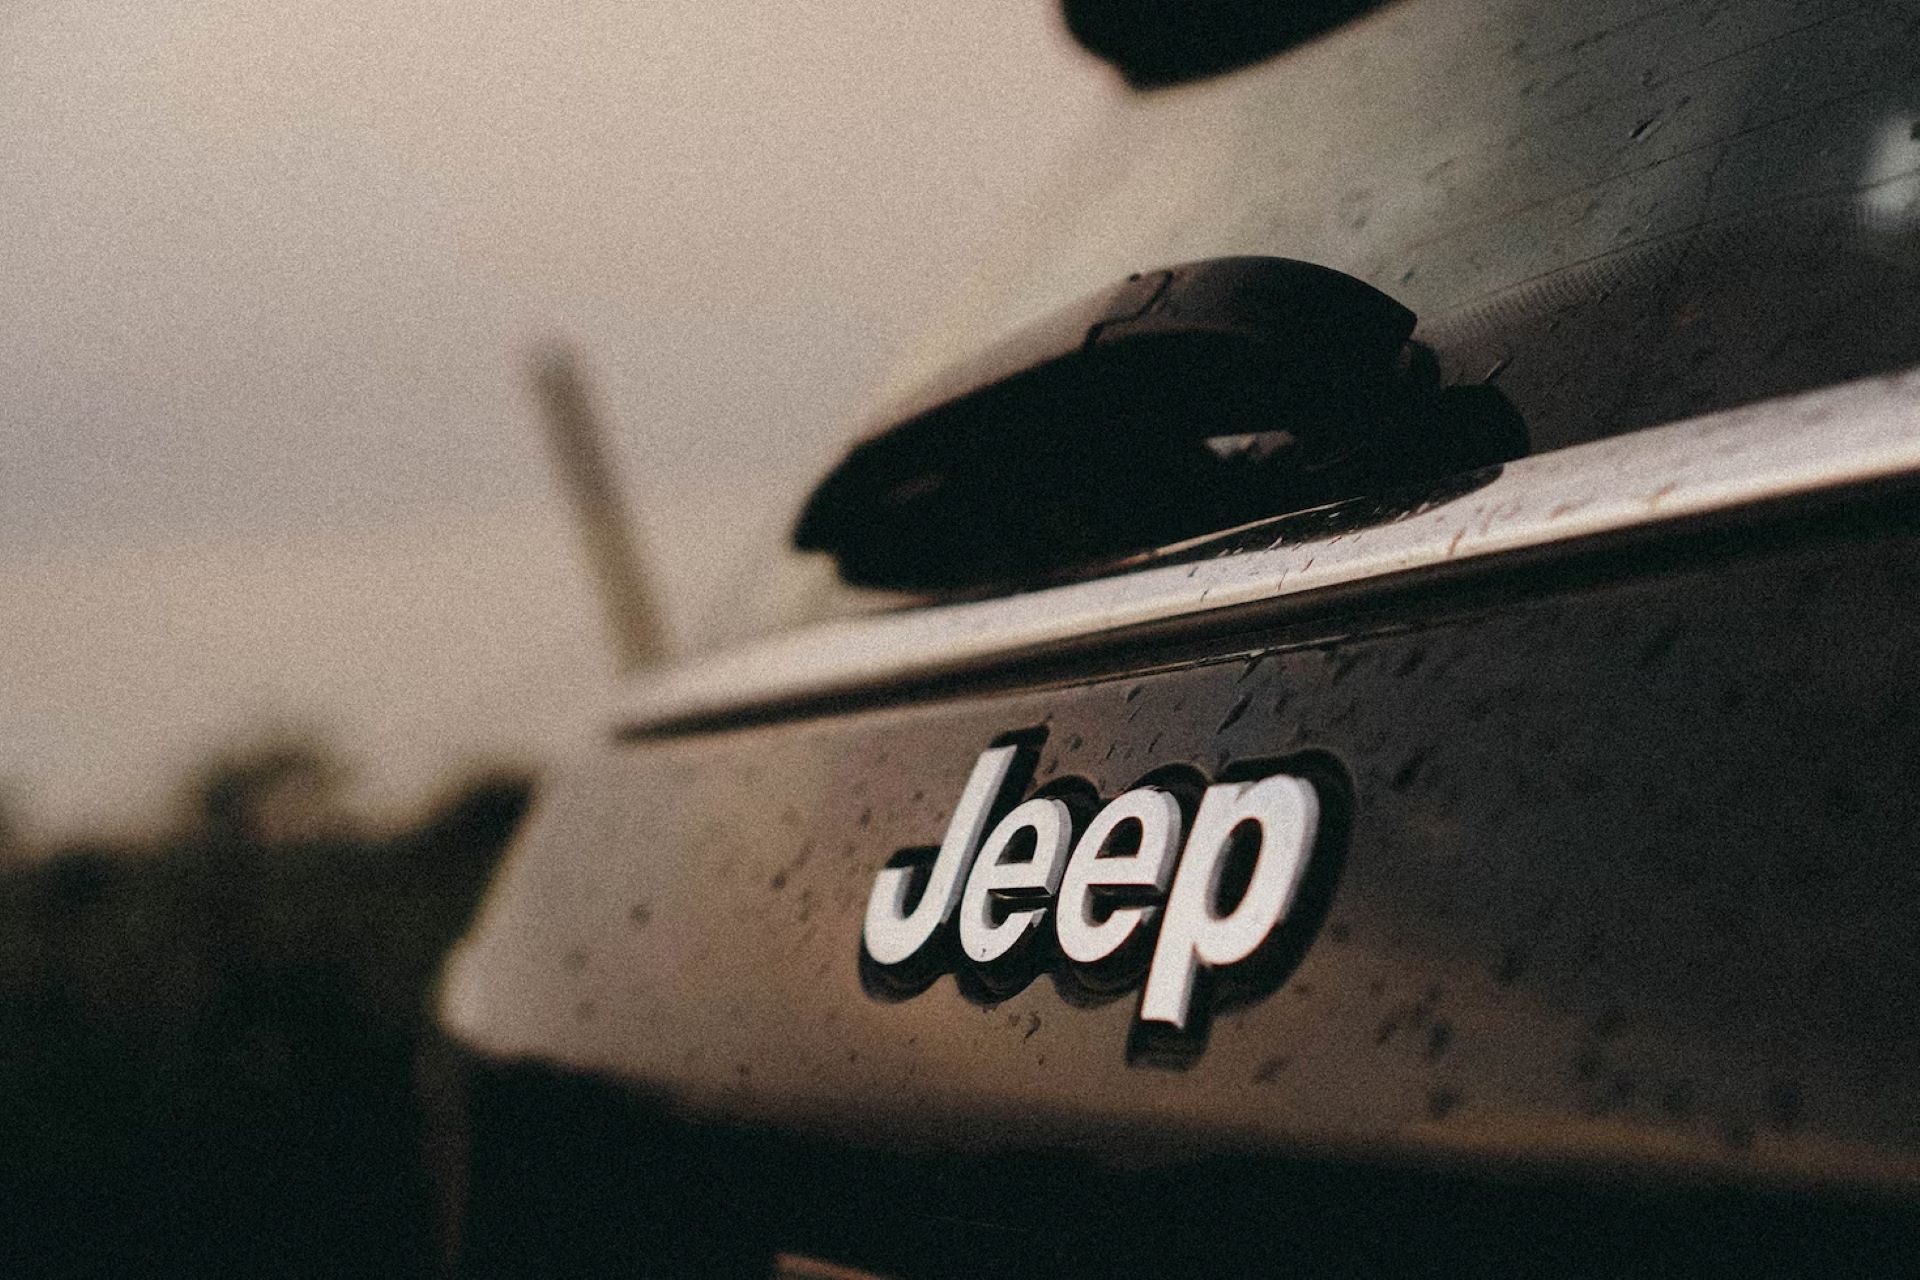 A photo of the Jeep verified logo